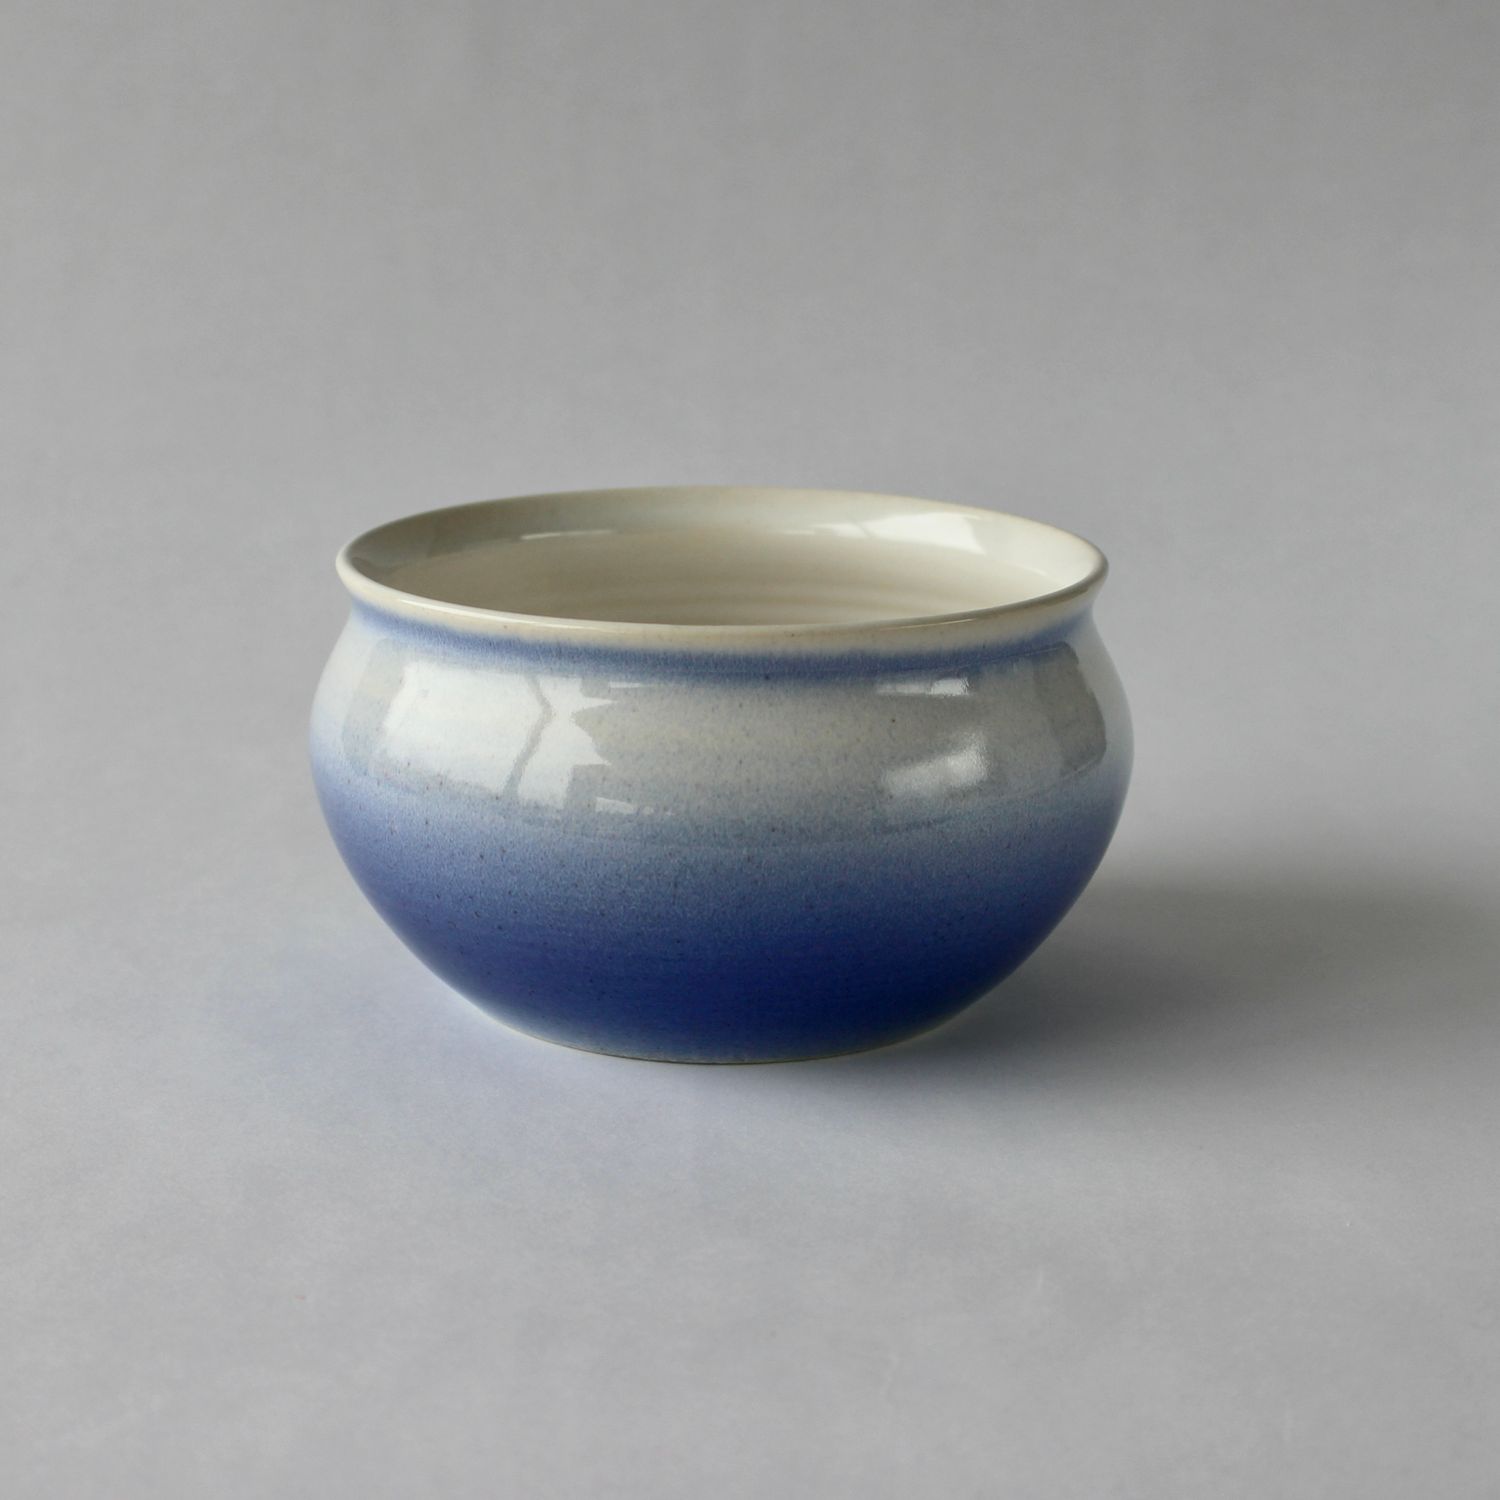 Annika Hoefs: Medium Bowl – Blue & White Product Image 1 of 1